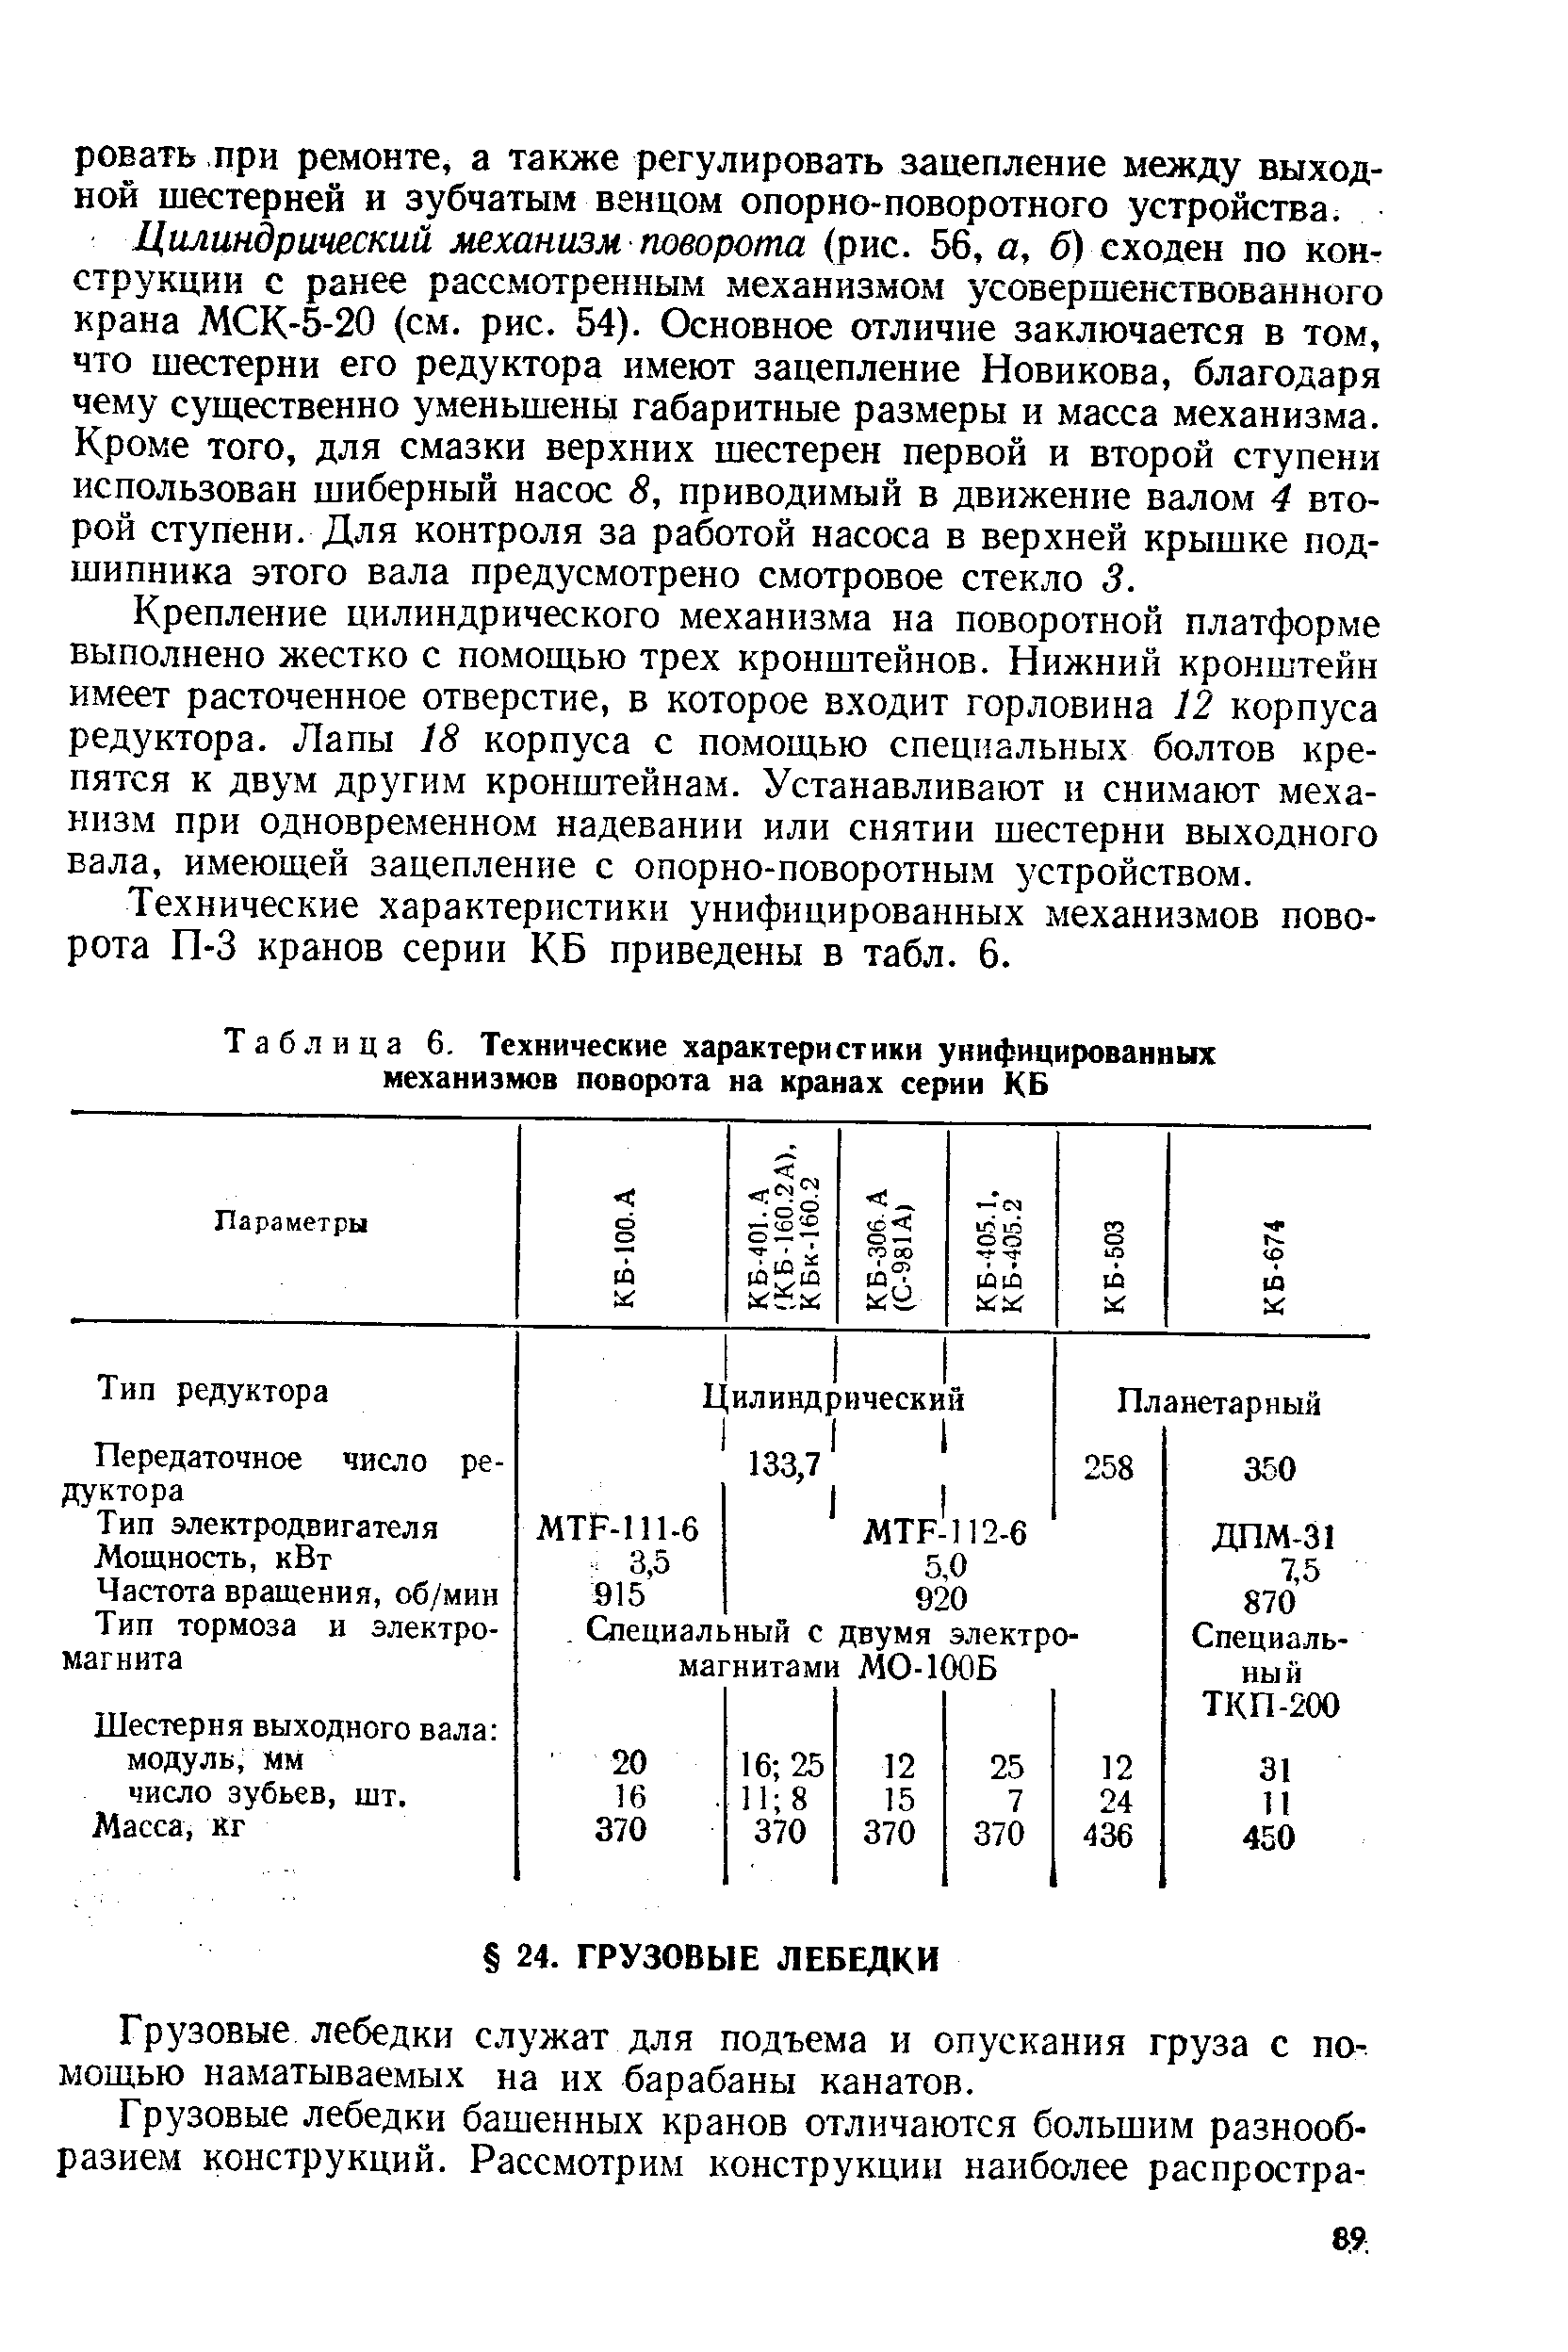 Таблица 6. Технические характеристики унифицированных <a href="/info/139149">механизмов поворота</a> на кранах серии КБ
